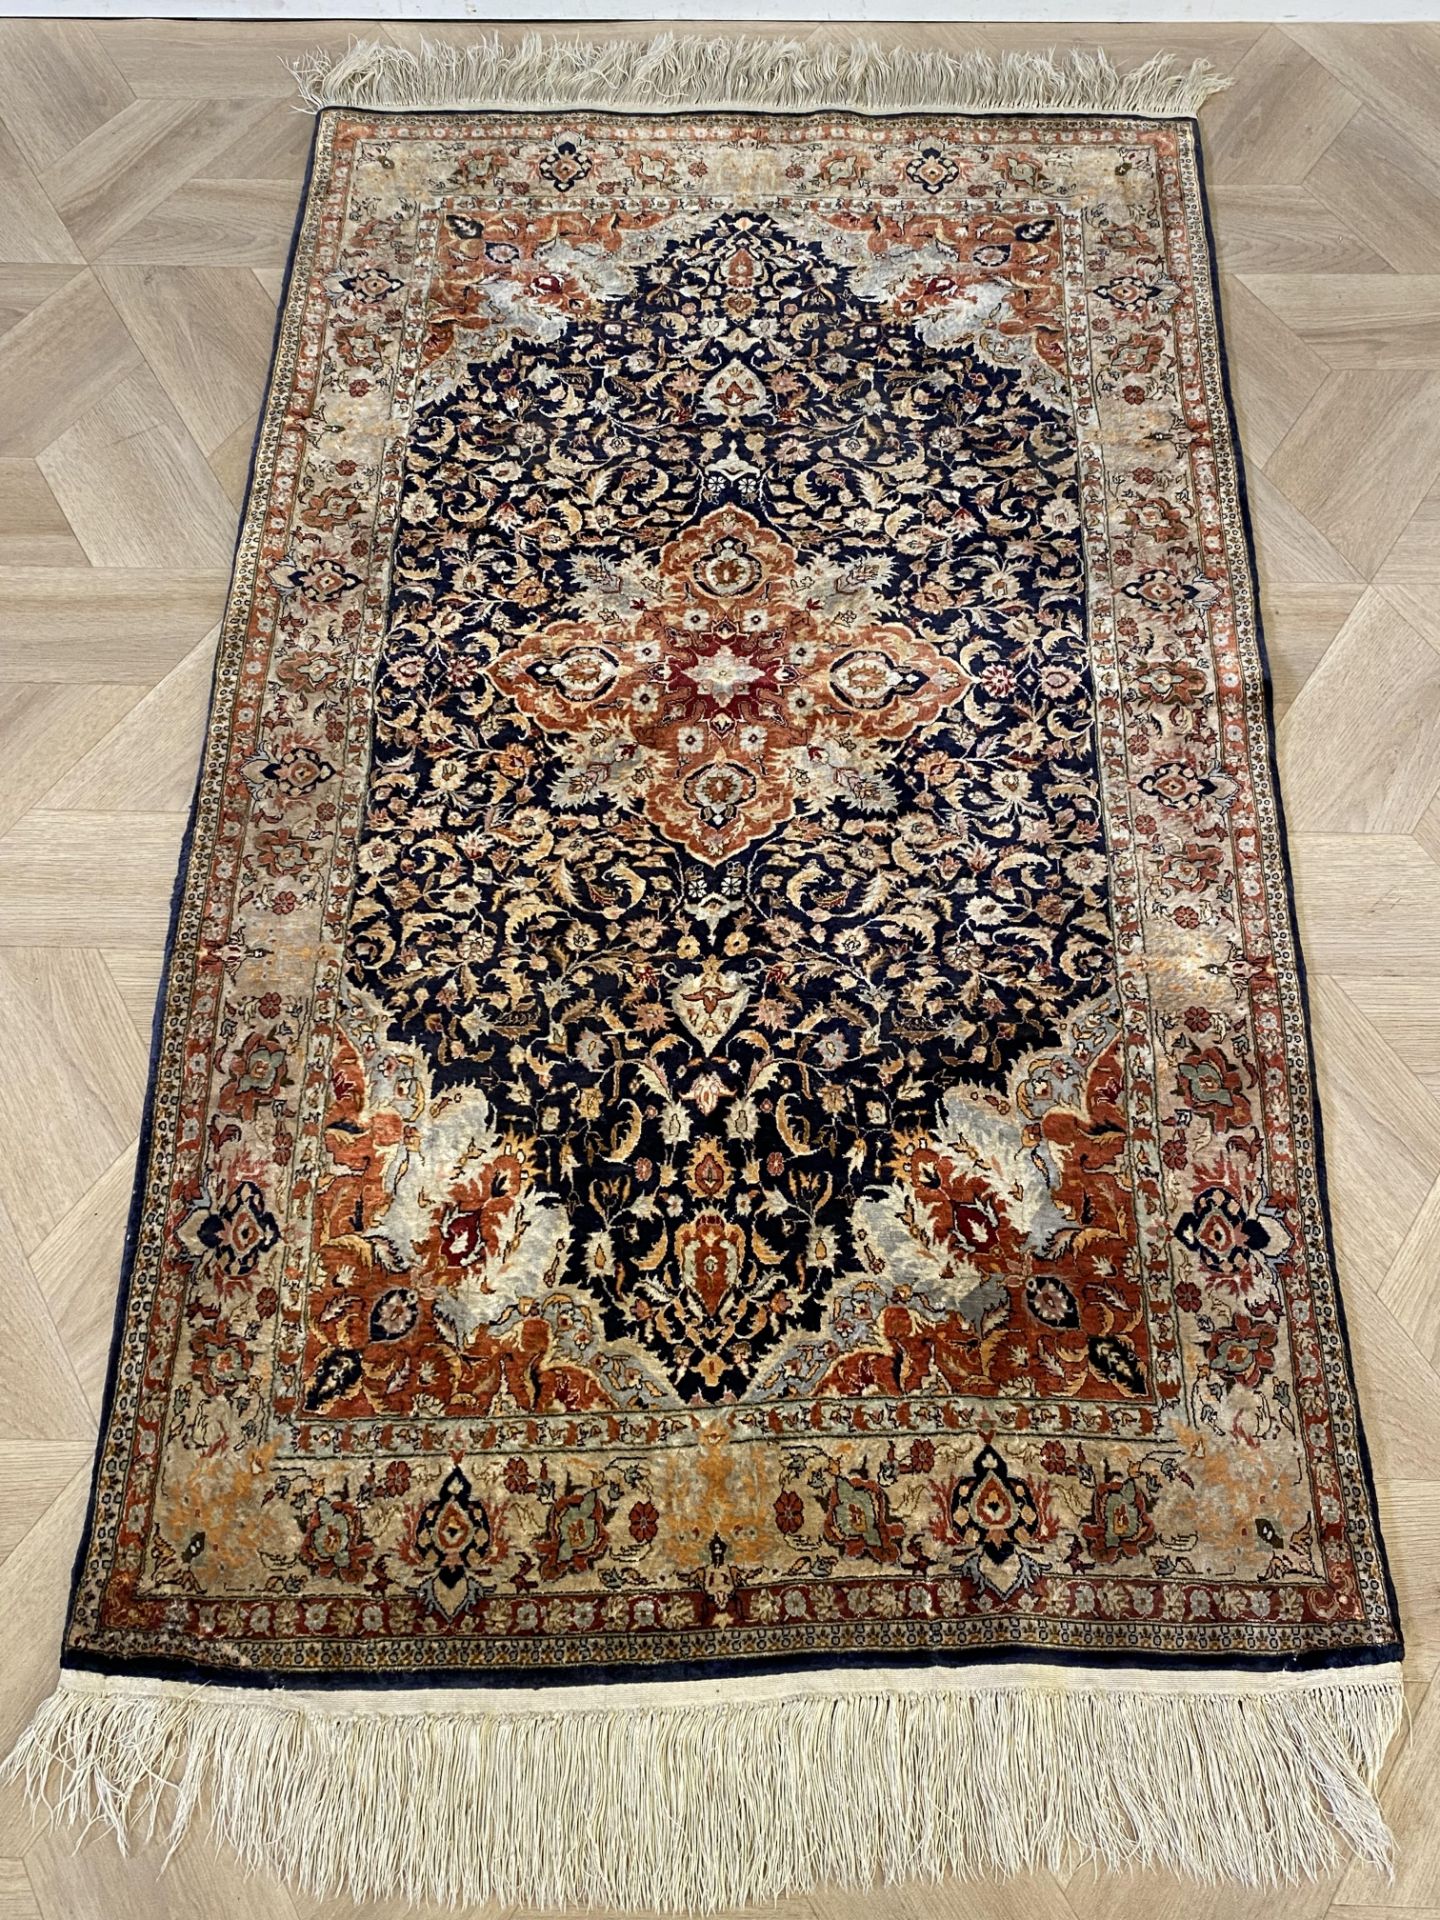 Blue ground silk rug